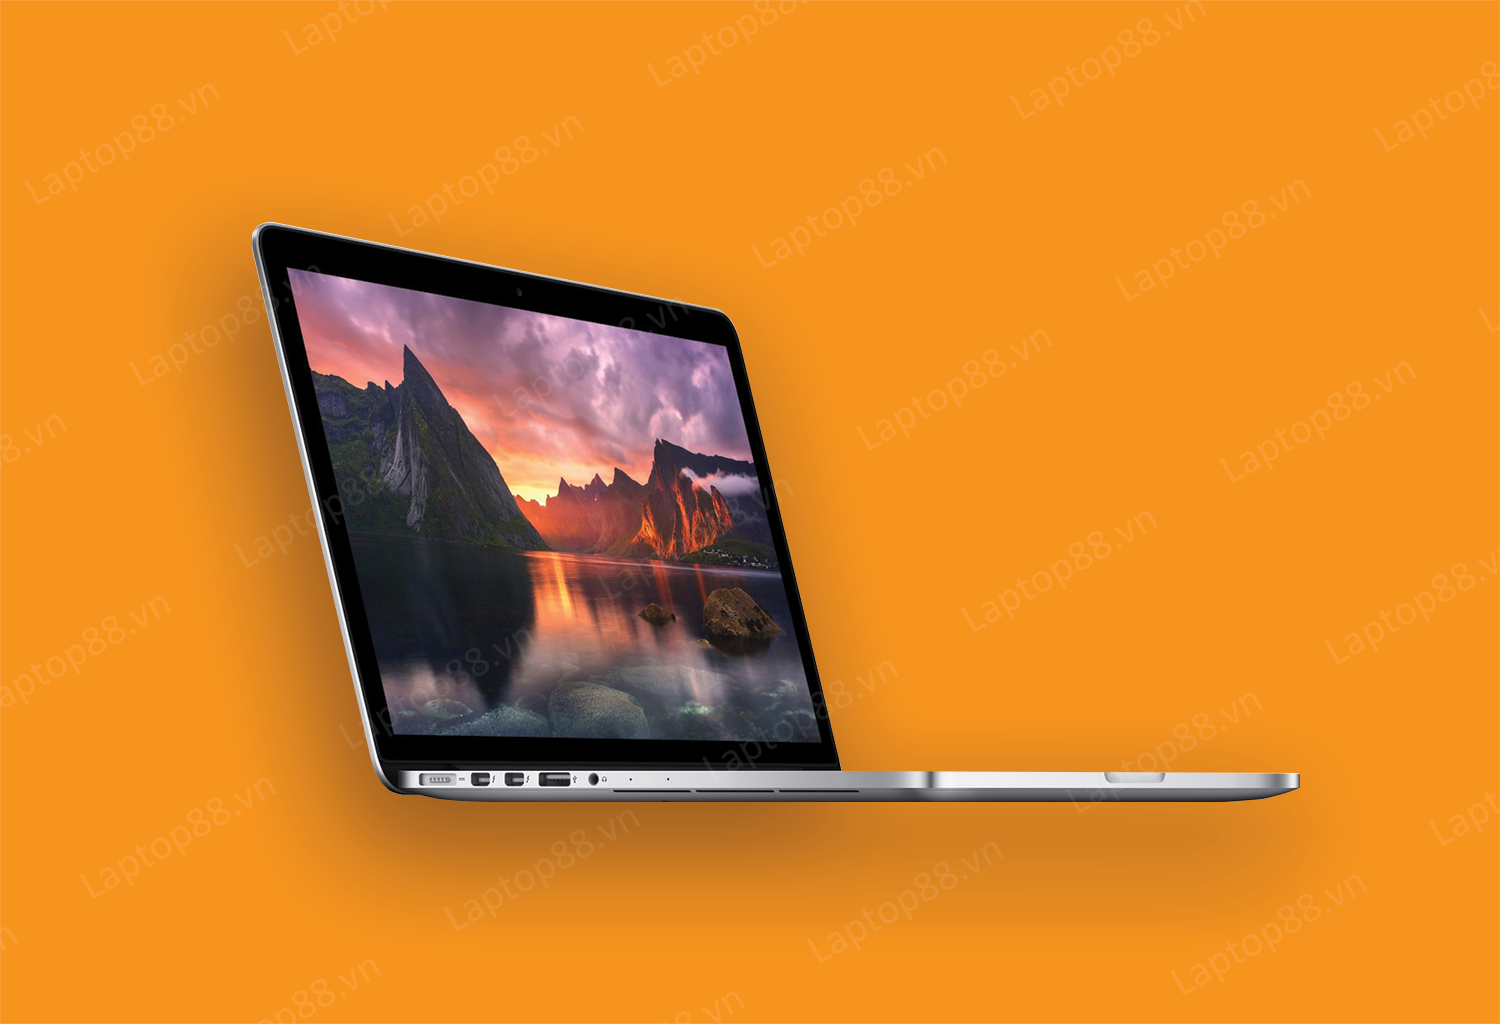 Macbook Pro 2013 15 inch: Rẻ Nhất TT, Chip i7 Khỏe, Màn Đẹp